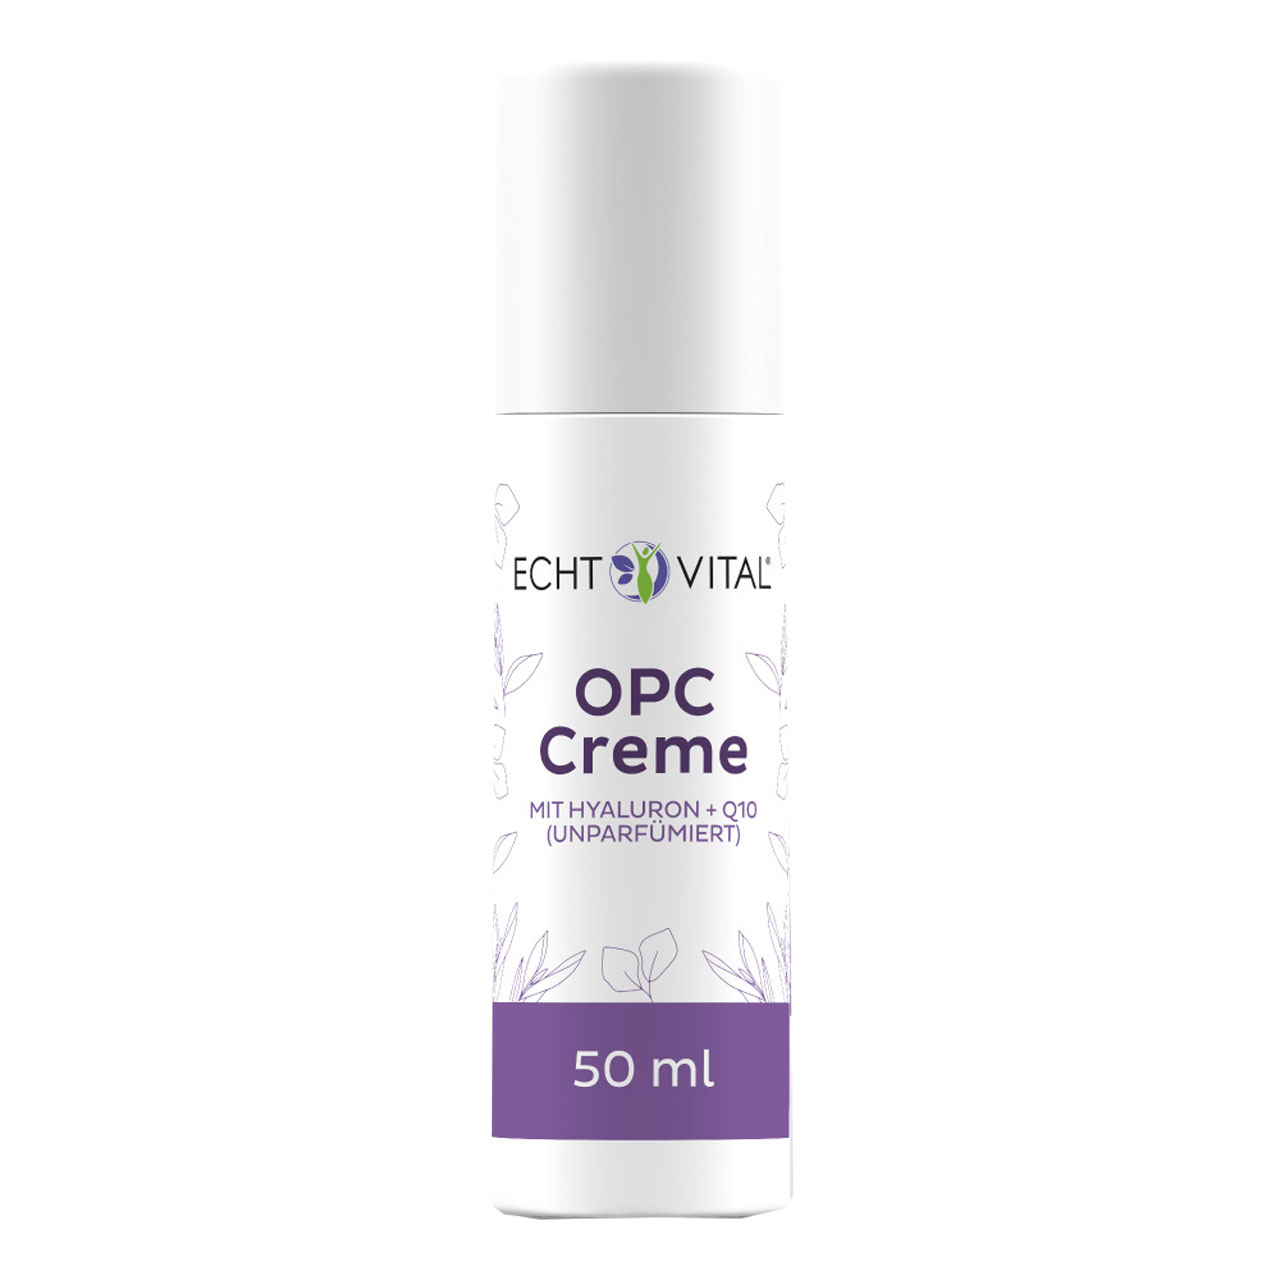 OPC Creme parfümfrei von Echt Vital in 50 Milliliter Packung